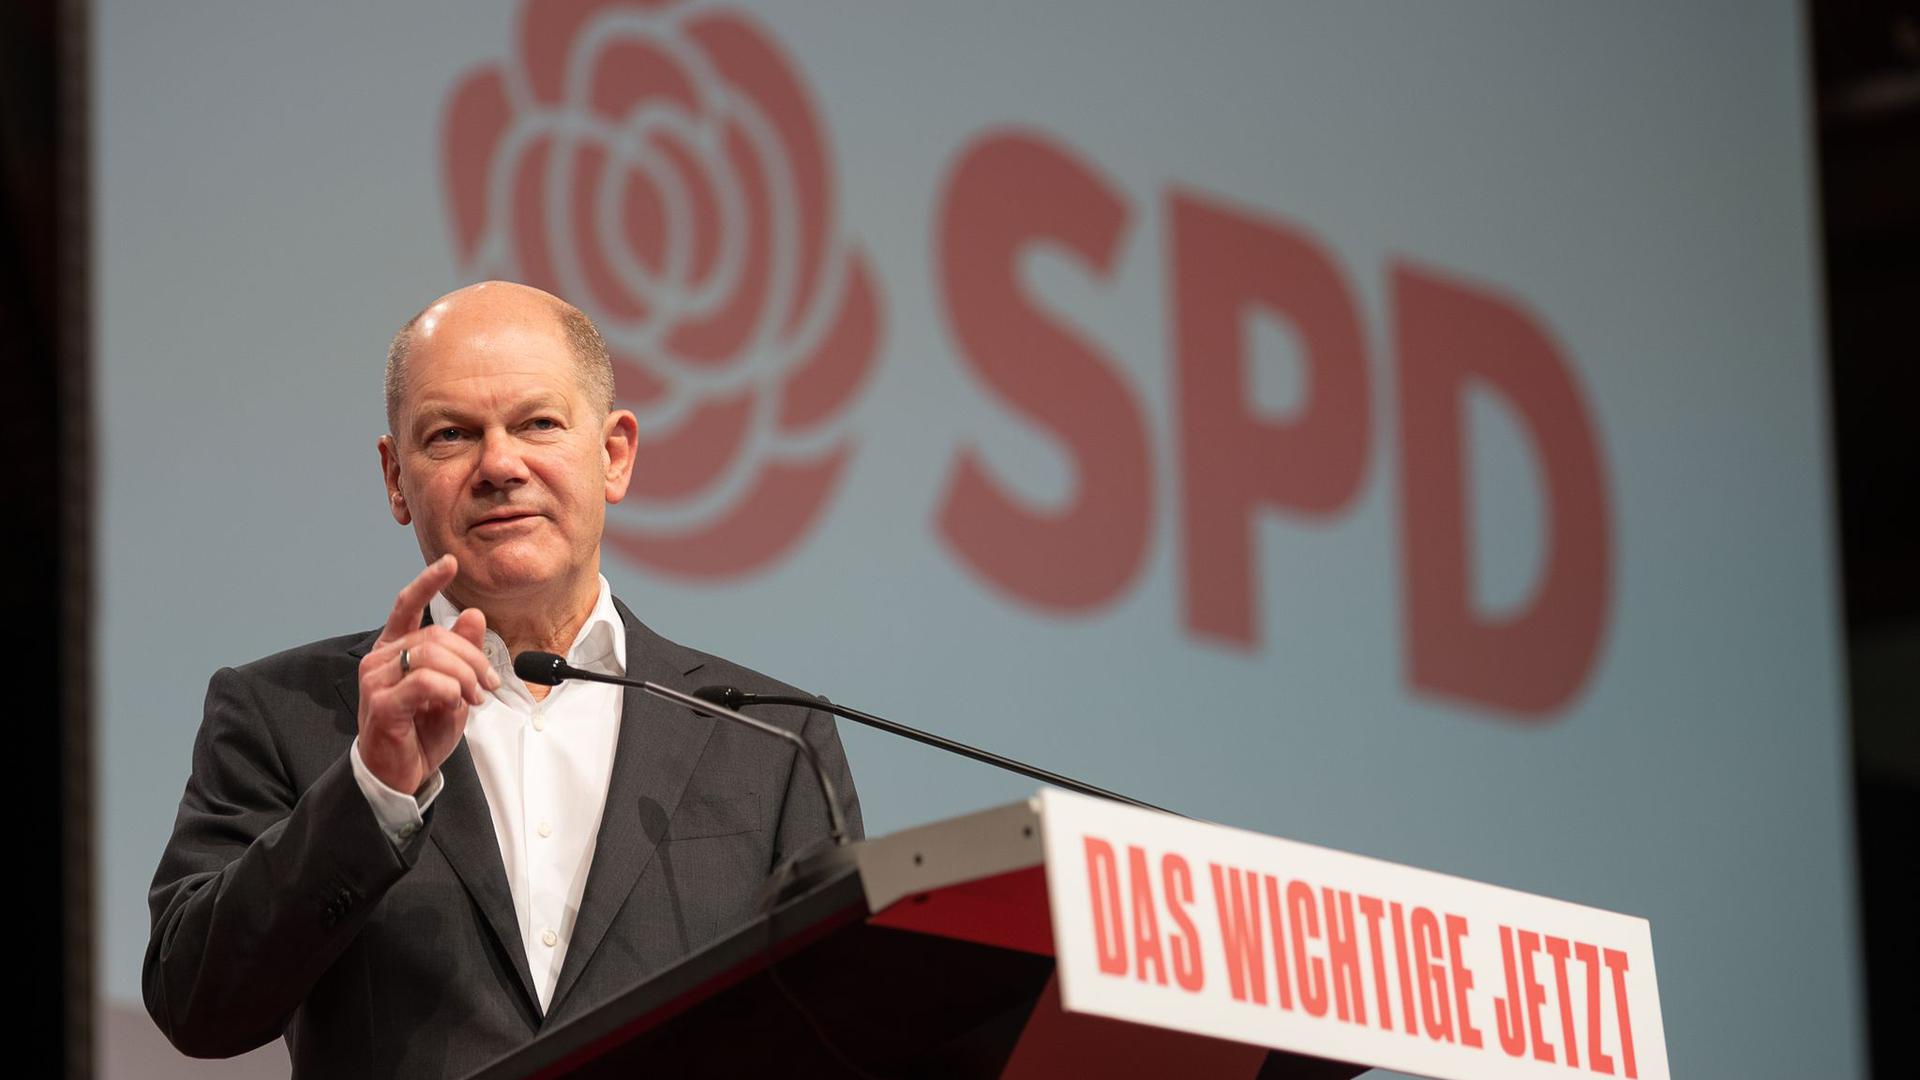 Bundesfinanzminister Olaf Scholz (SPD) bei einem digitalen Parteitag der baden-württembergischen Sozialdemokraten in Stuttgart.